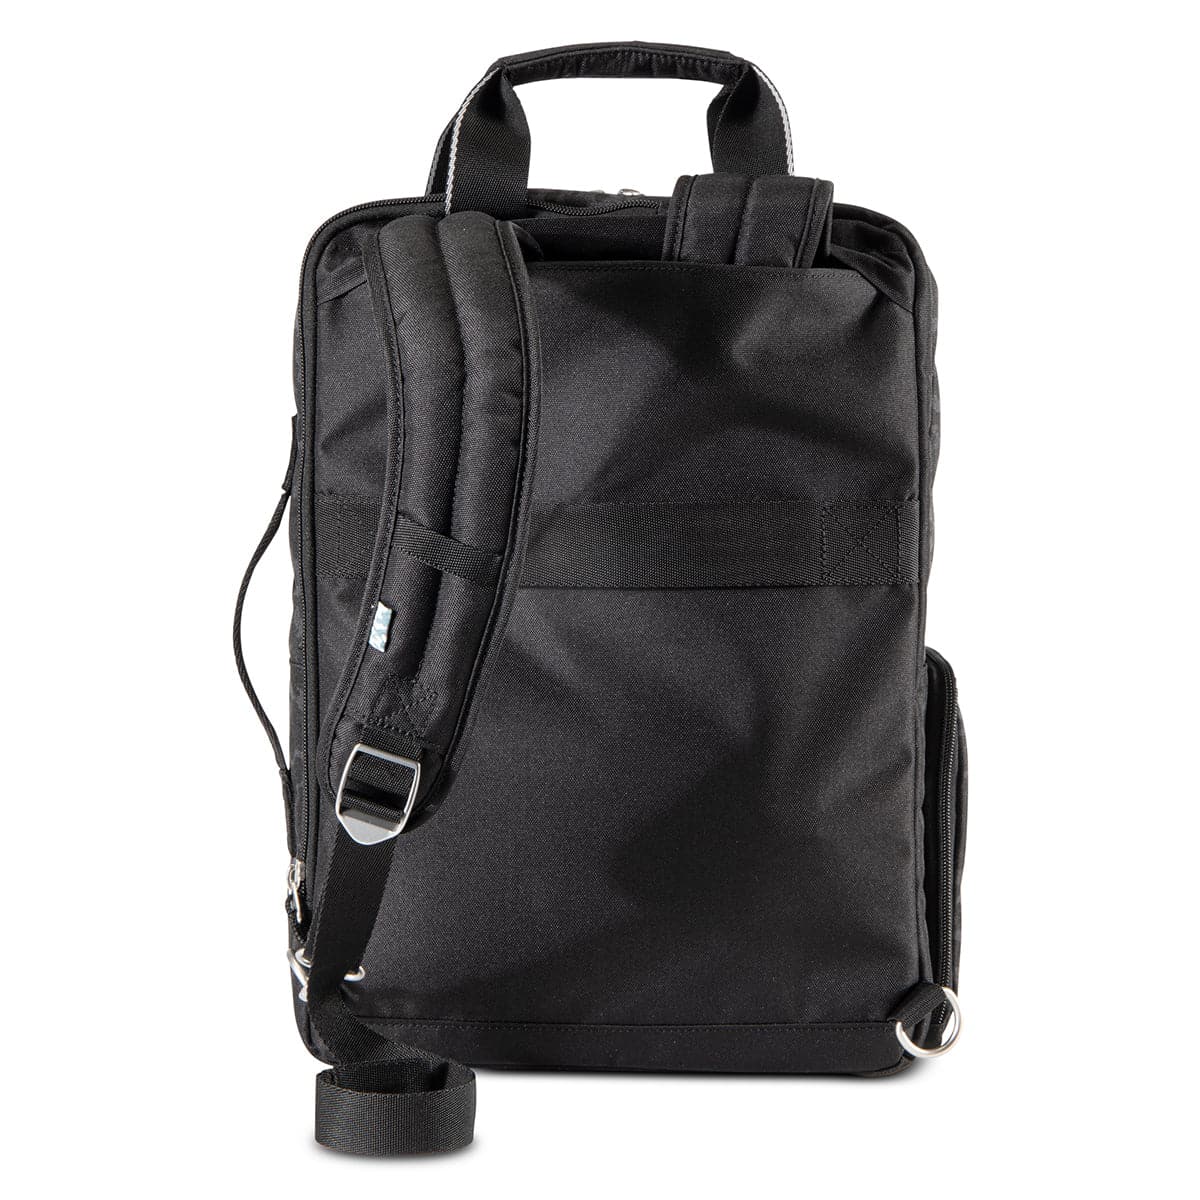 Skyway Rainier Deluxe Backpack - 17L